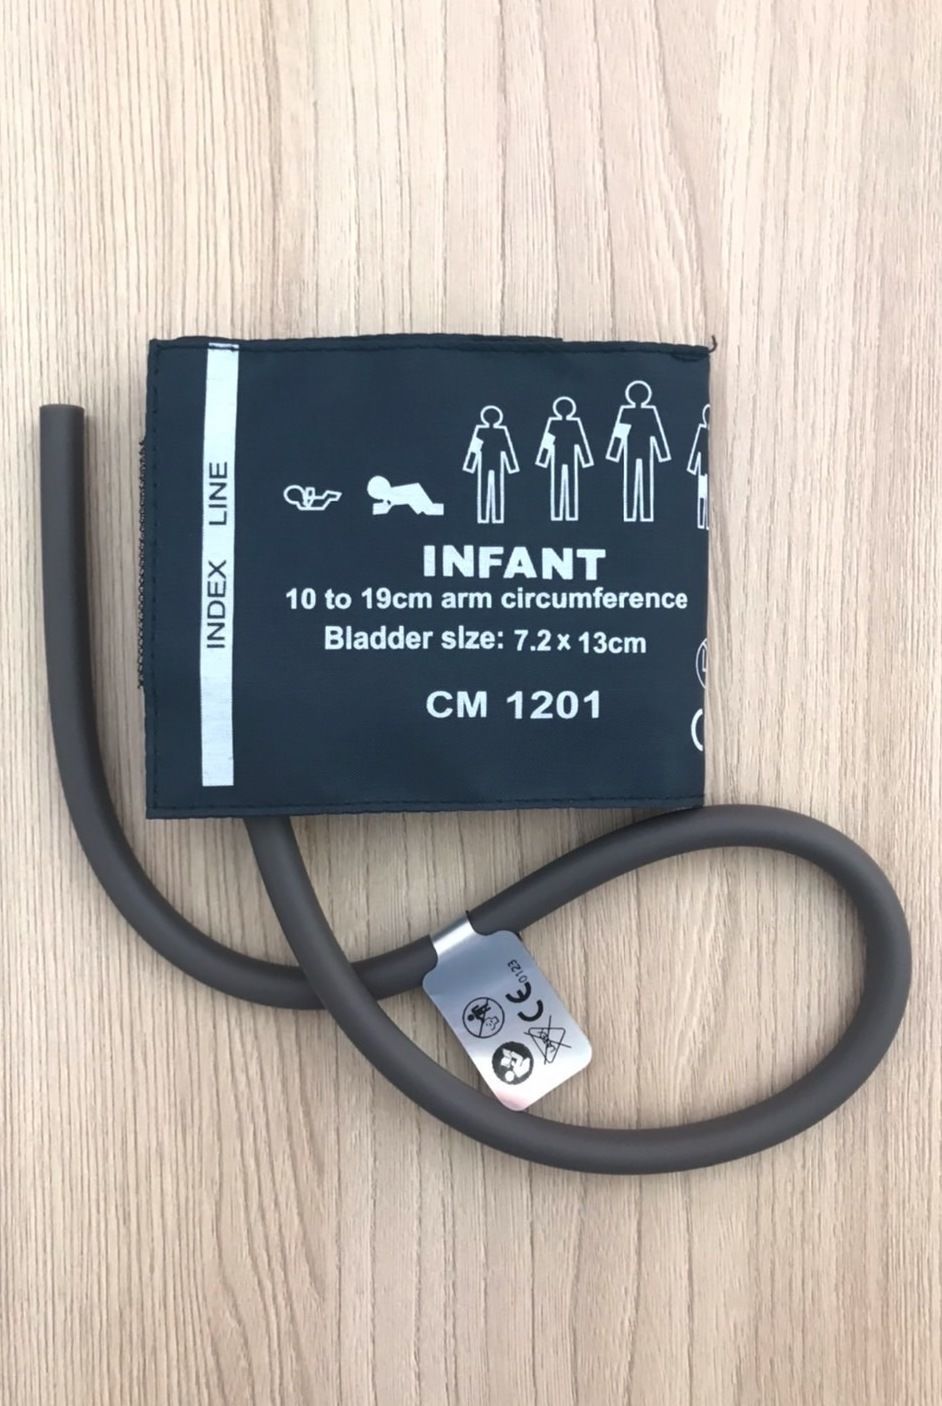 NIBP Cuff BP Cuff Infant 10-19 Cm Dual tube_ผ้าคัพผ้าพันแขนวัดความดันเด็กเล็กขนาด 10-19 ซม.แบบท่อยางคู่สำหรับเครื่องวัดความดันเครื่องมอนิเตอร์ผู้ป่วย